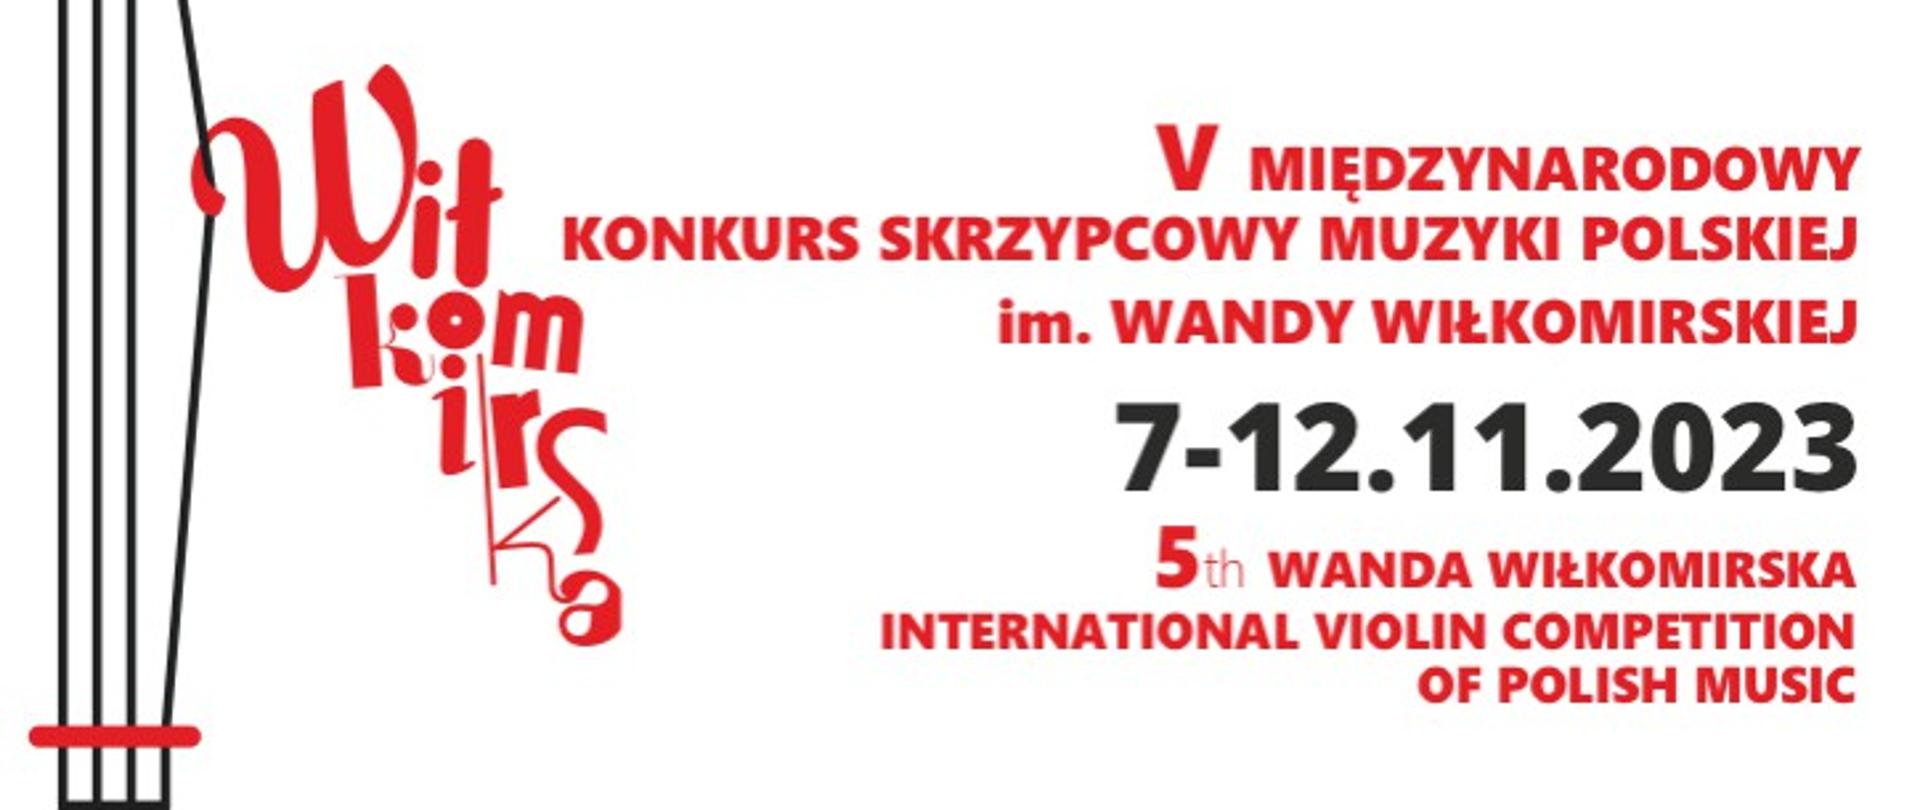 Na białym tle z lewej strony cztery pionowe linie. Z prawej strony napis V Międzynarodowy Konkurs Skrzypcowy Muzyki Polskiej imienia Wandy Wiłkomirskiej